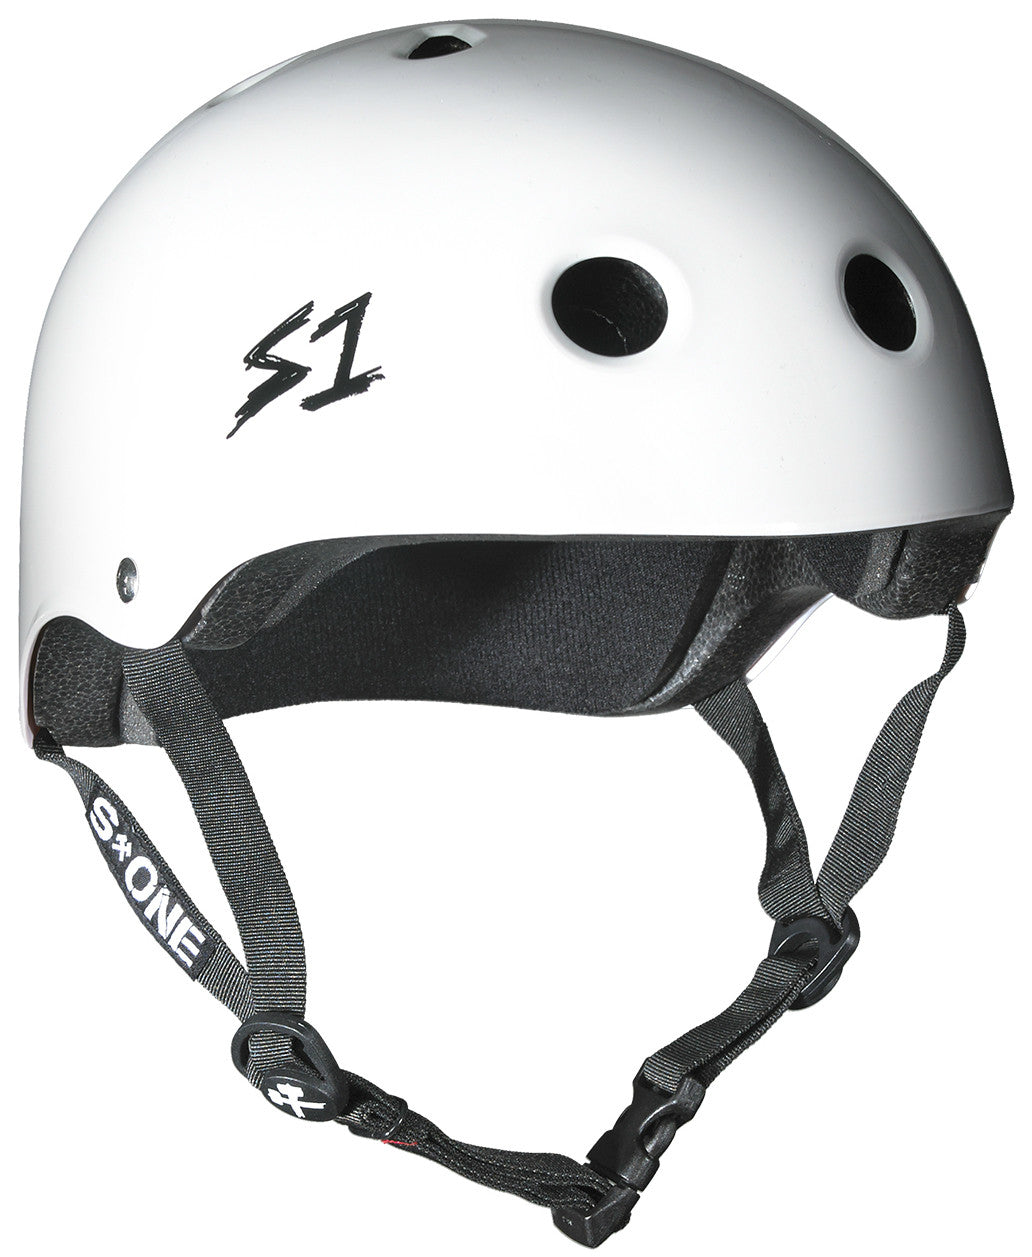 S1 Lifer Helmet in White Gloss